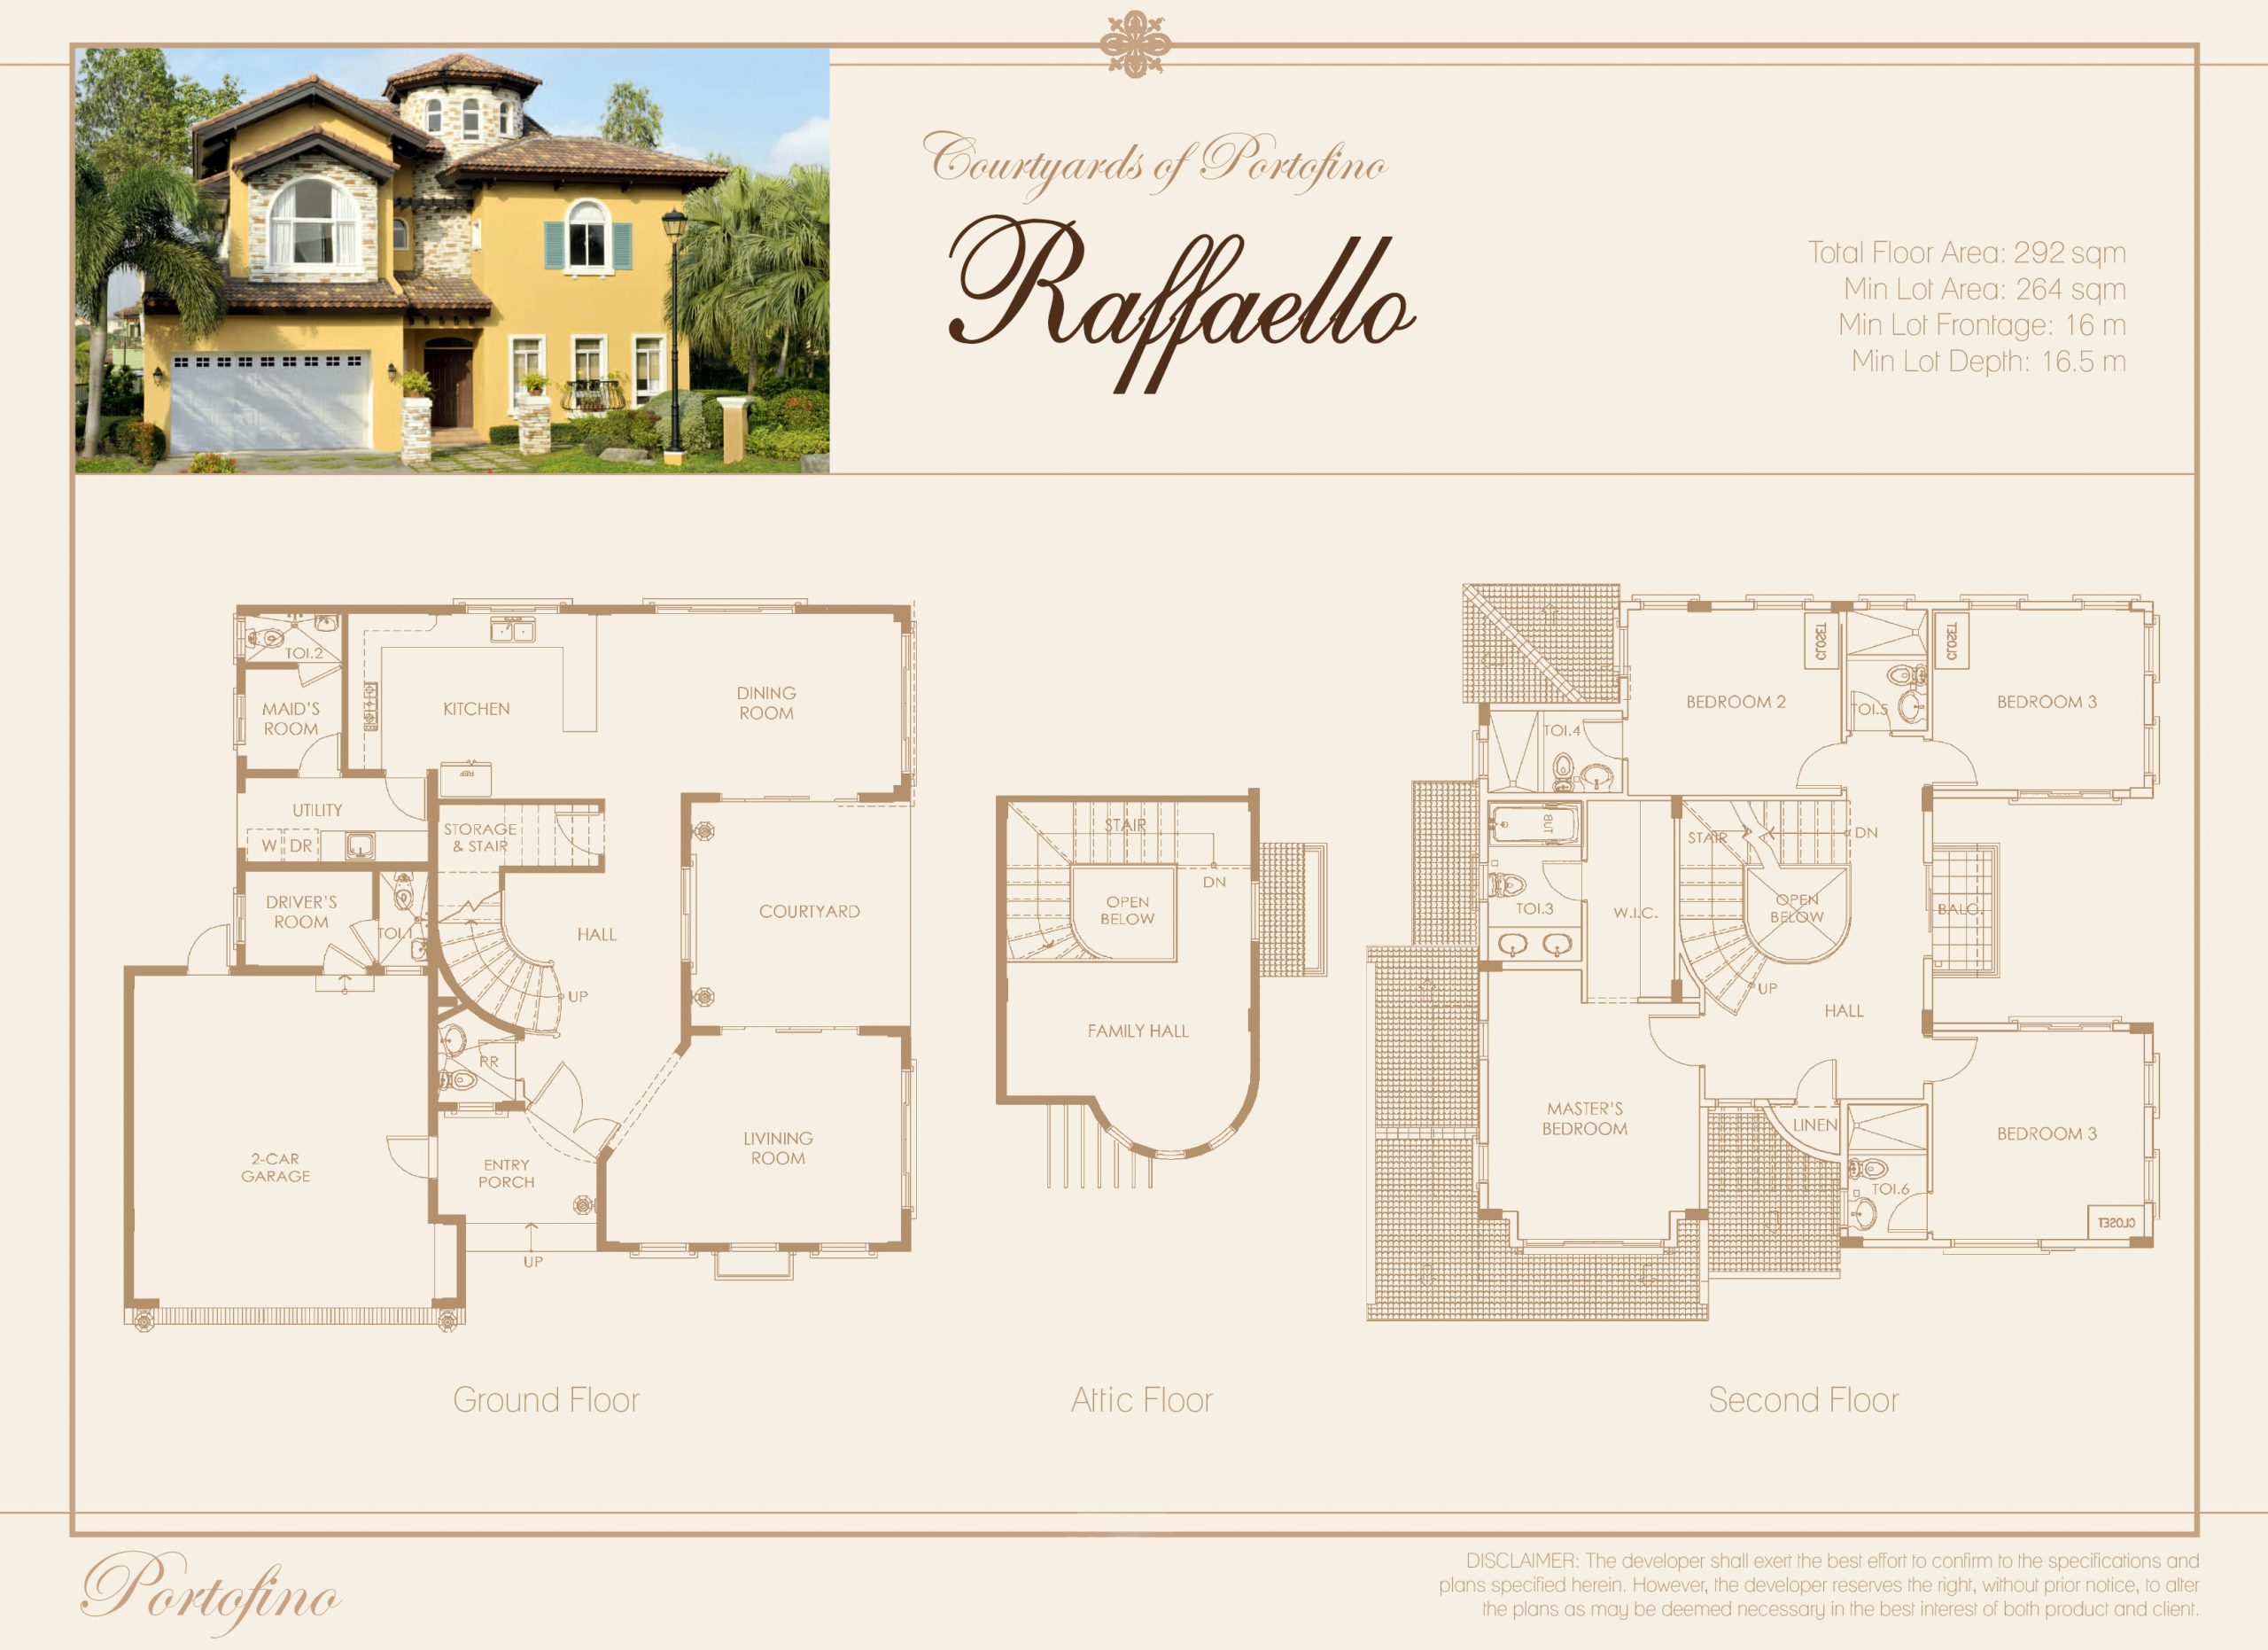 Raffaello floor plan